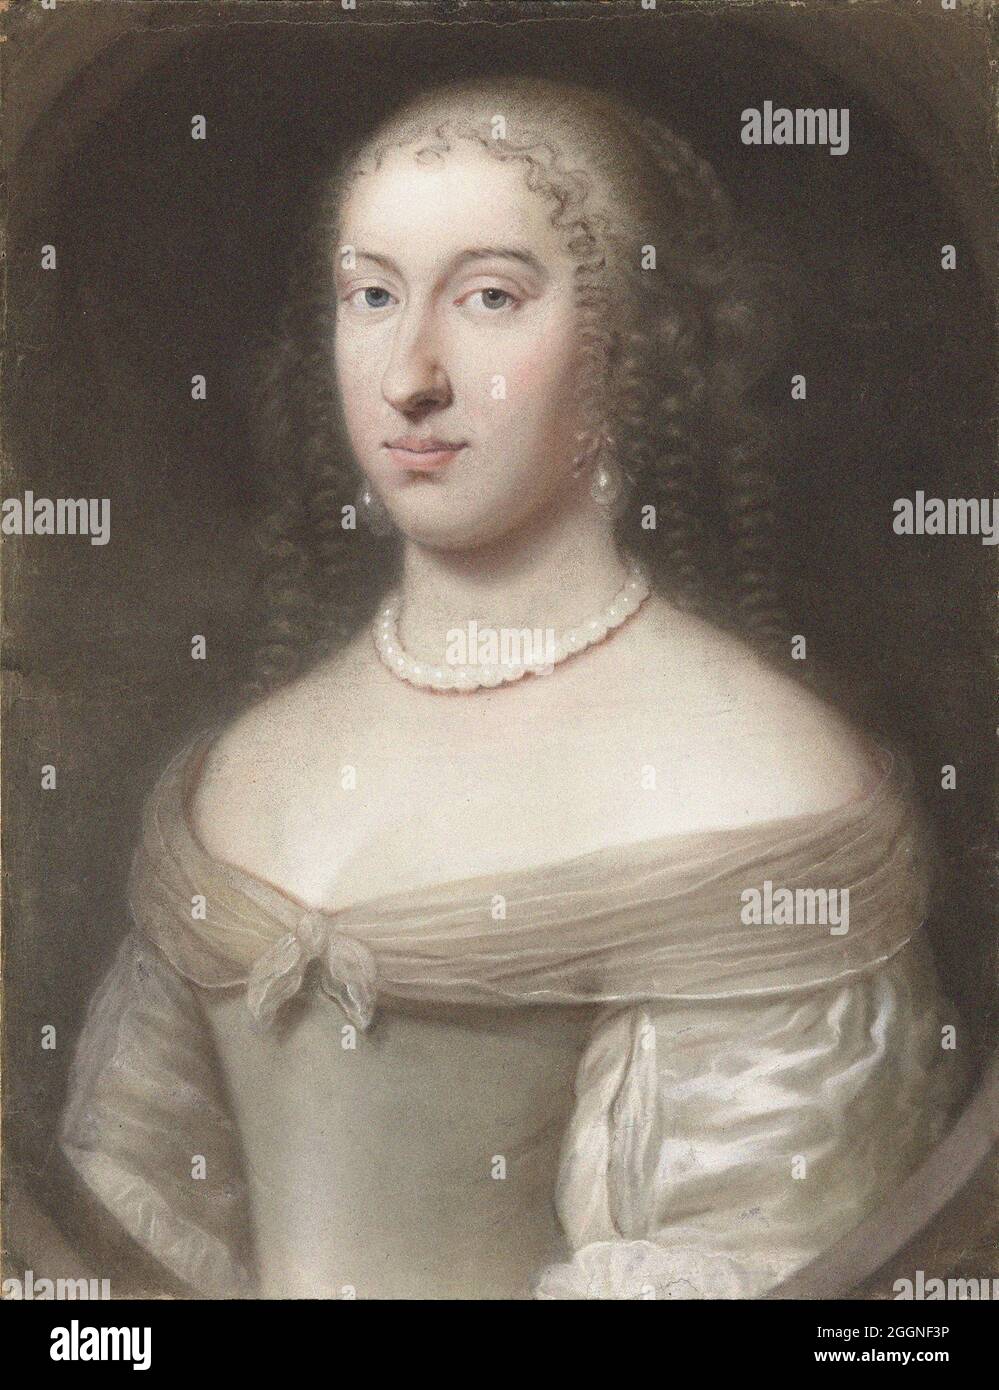 Porträt von Maria Theresia von Spanien (1638-1683), Königin Gemahlin von Frankreich und Navarra. Museum: Musée de l'Histoire de France, Château de Versailles. Autor: WALLERANT VAILLANT. Stockfoto